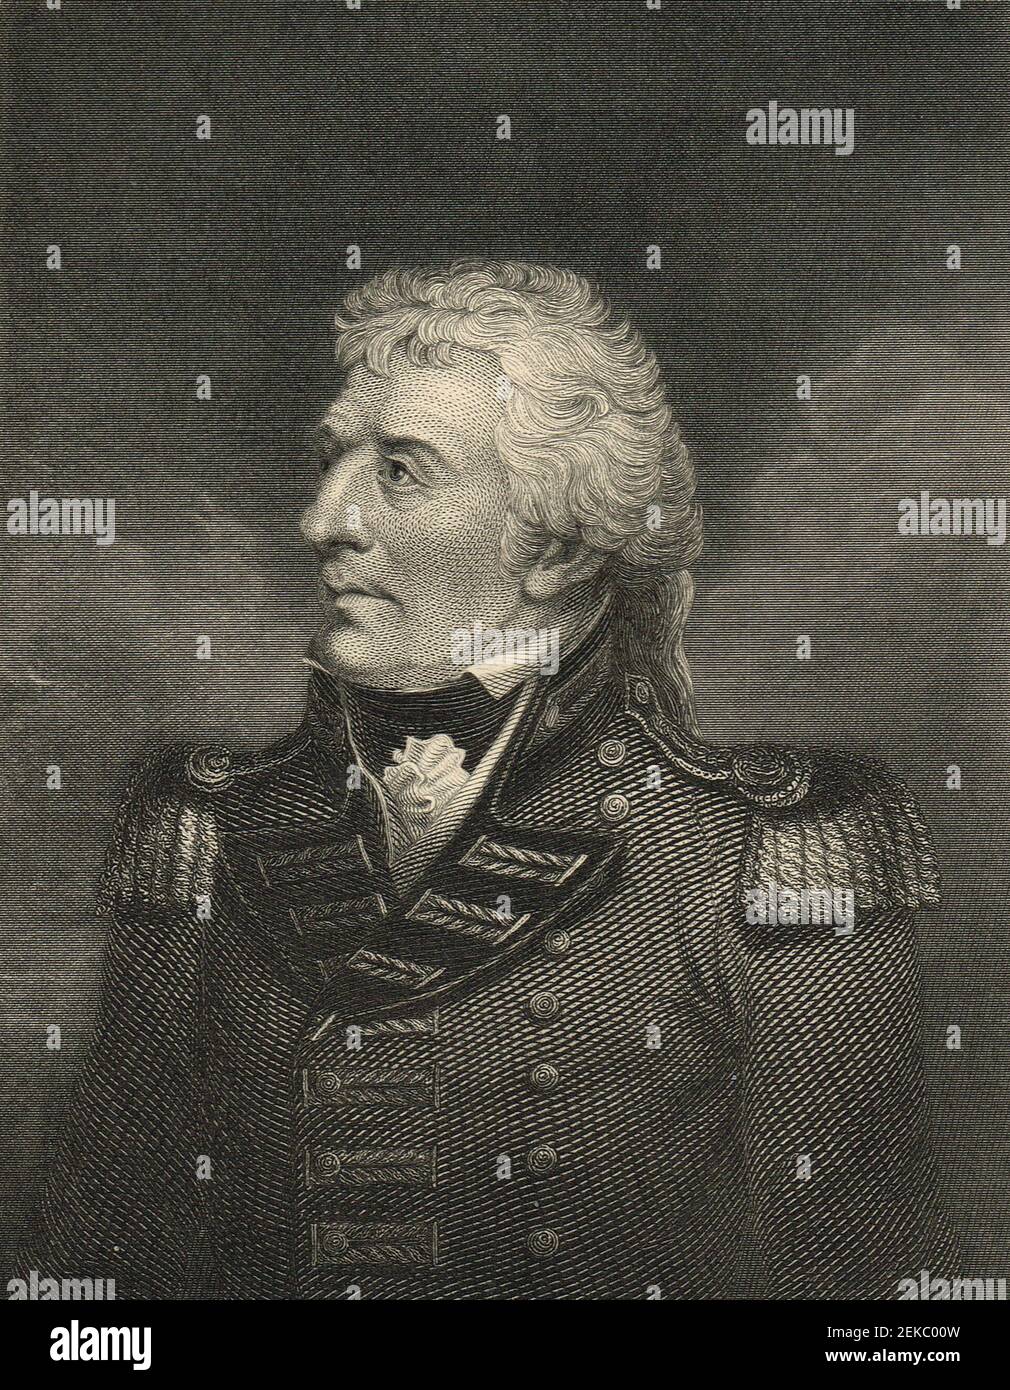 Gerard Lake, 1° Viscount Lake (1808 luglio 1744 – 20 febbraio 27), è stato un generale britannico. Comandò le forze britanniche durante la ribellione irlandese del 1798, e in seguito fu comandante in capo dell'esercito dell'India britannica. Foto Stock